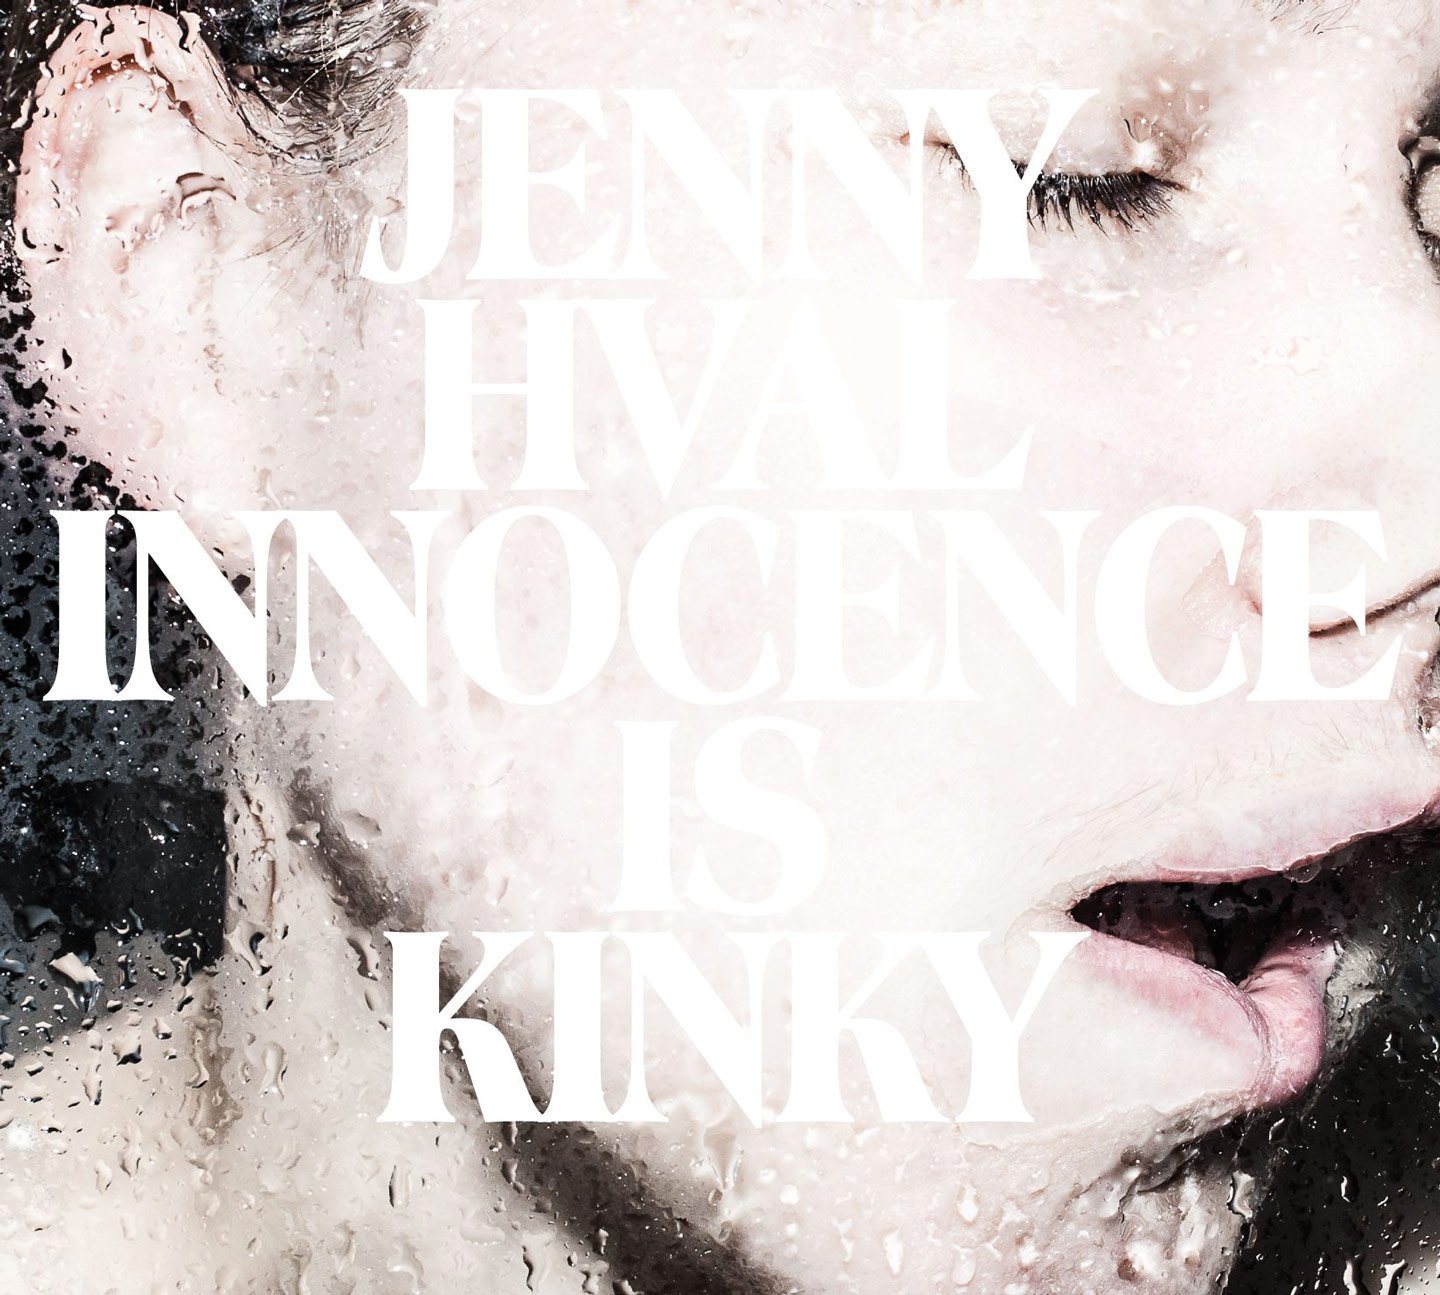 Innocence is Kinky by Jenny Hval